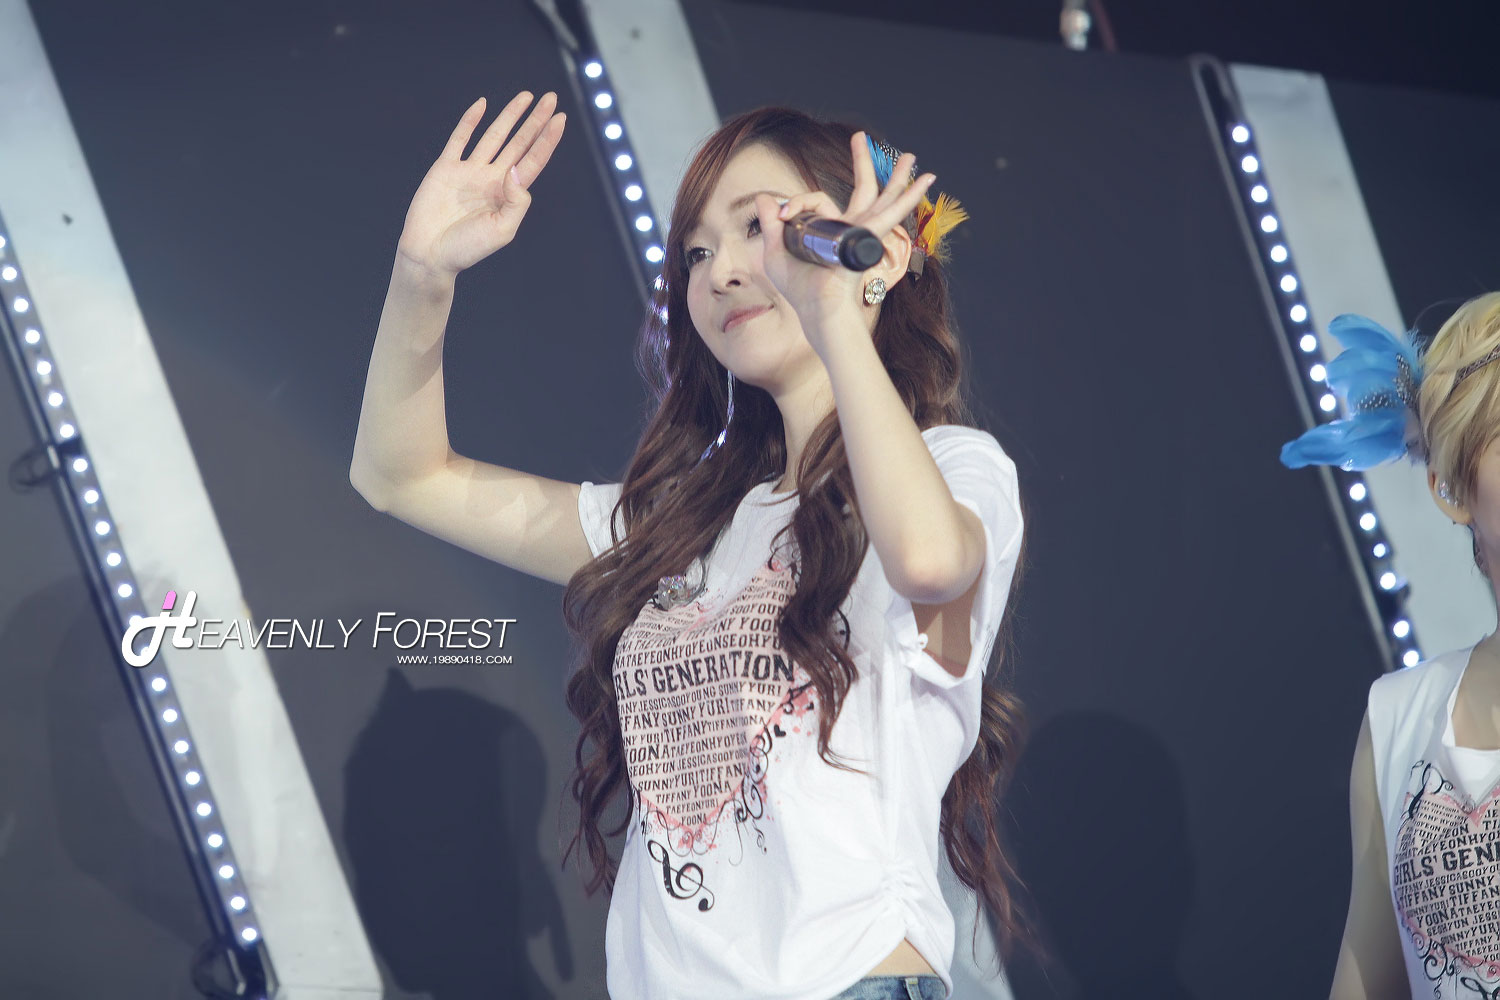 Jessica focus @ Bangkok Concert